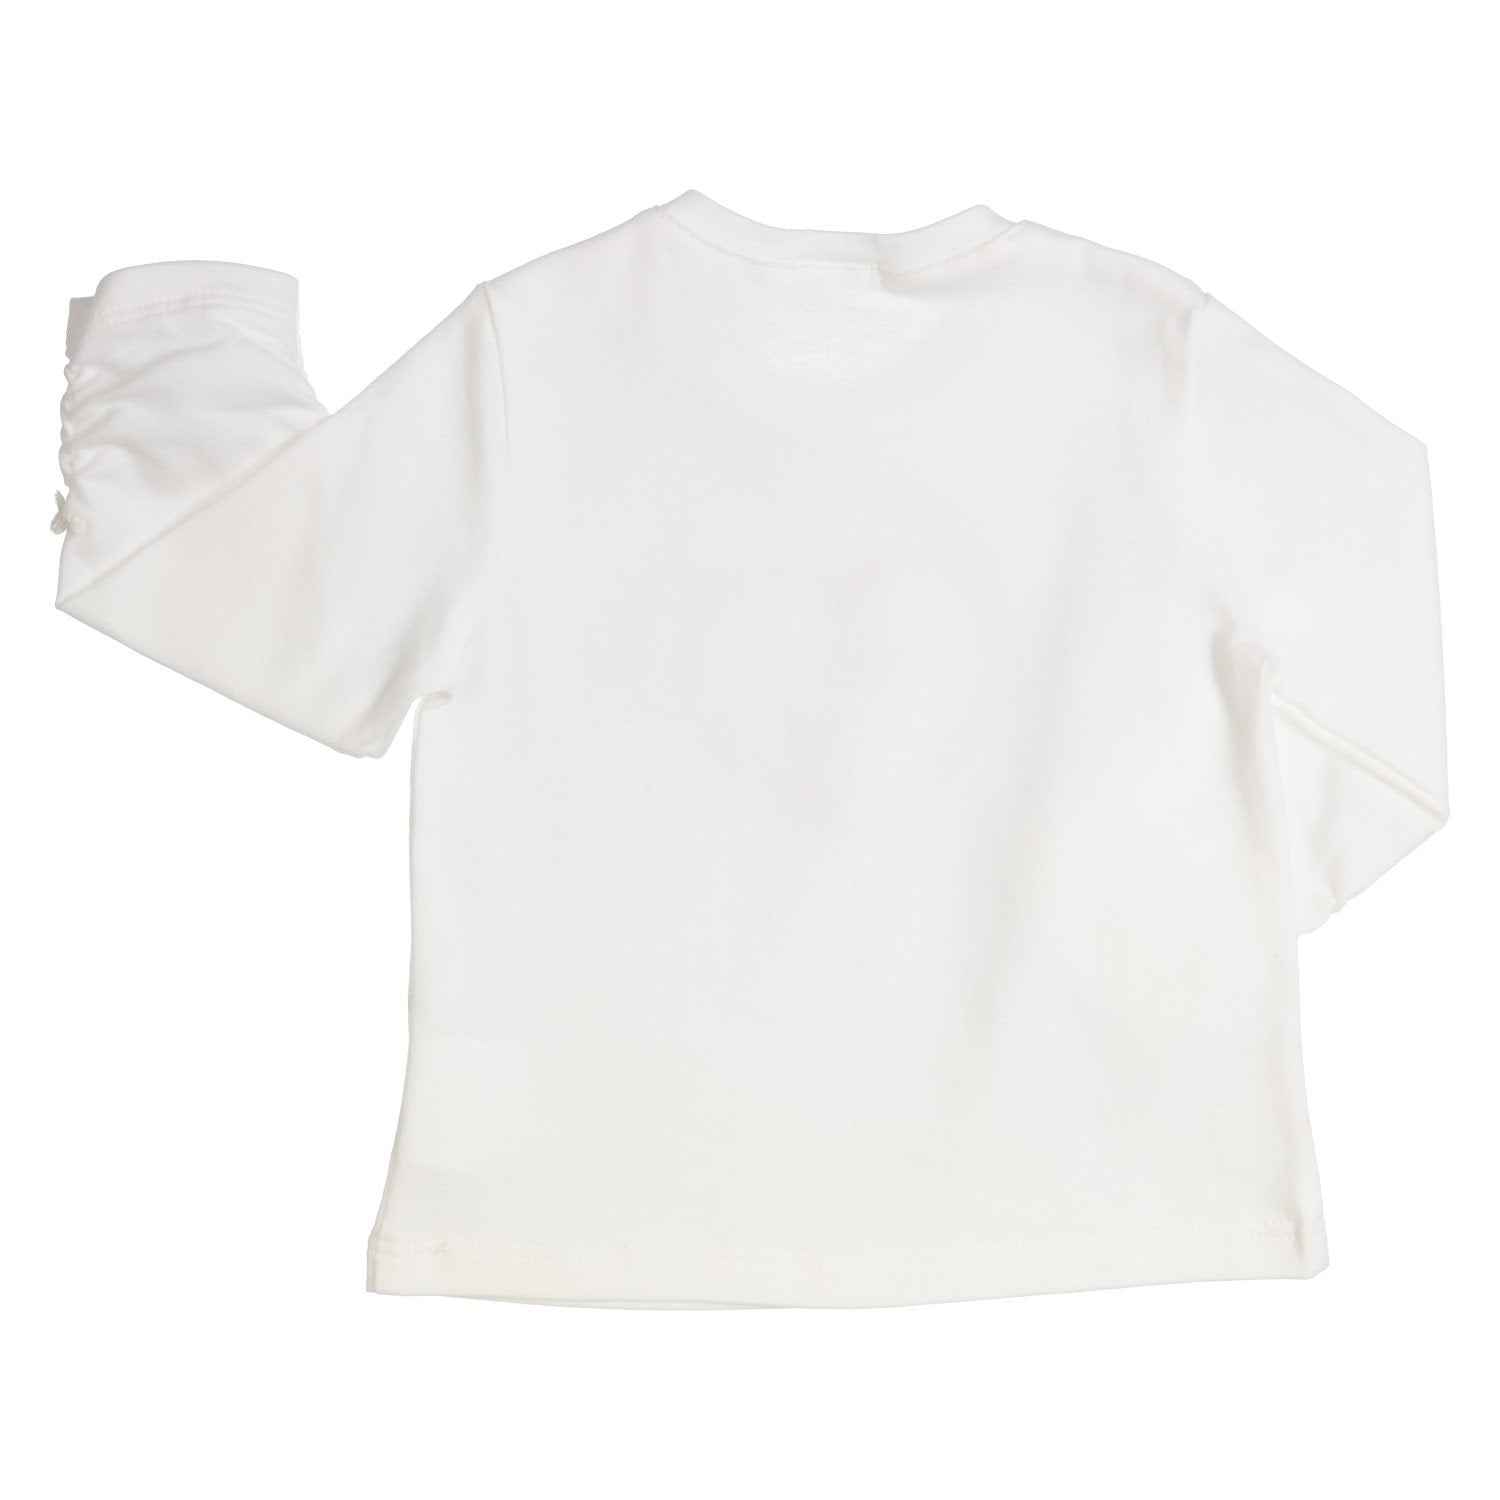 Baby meisjes LONGSLEEVE - ESPECIALLY FOR YO van GYMP in de kleur OFF-WHITE in maat 86.